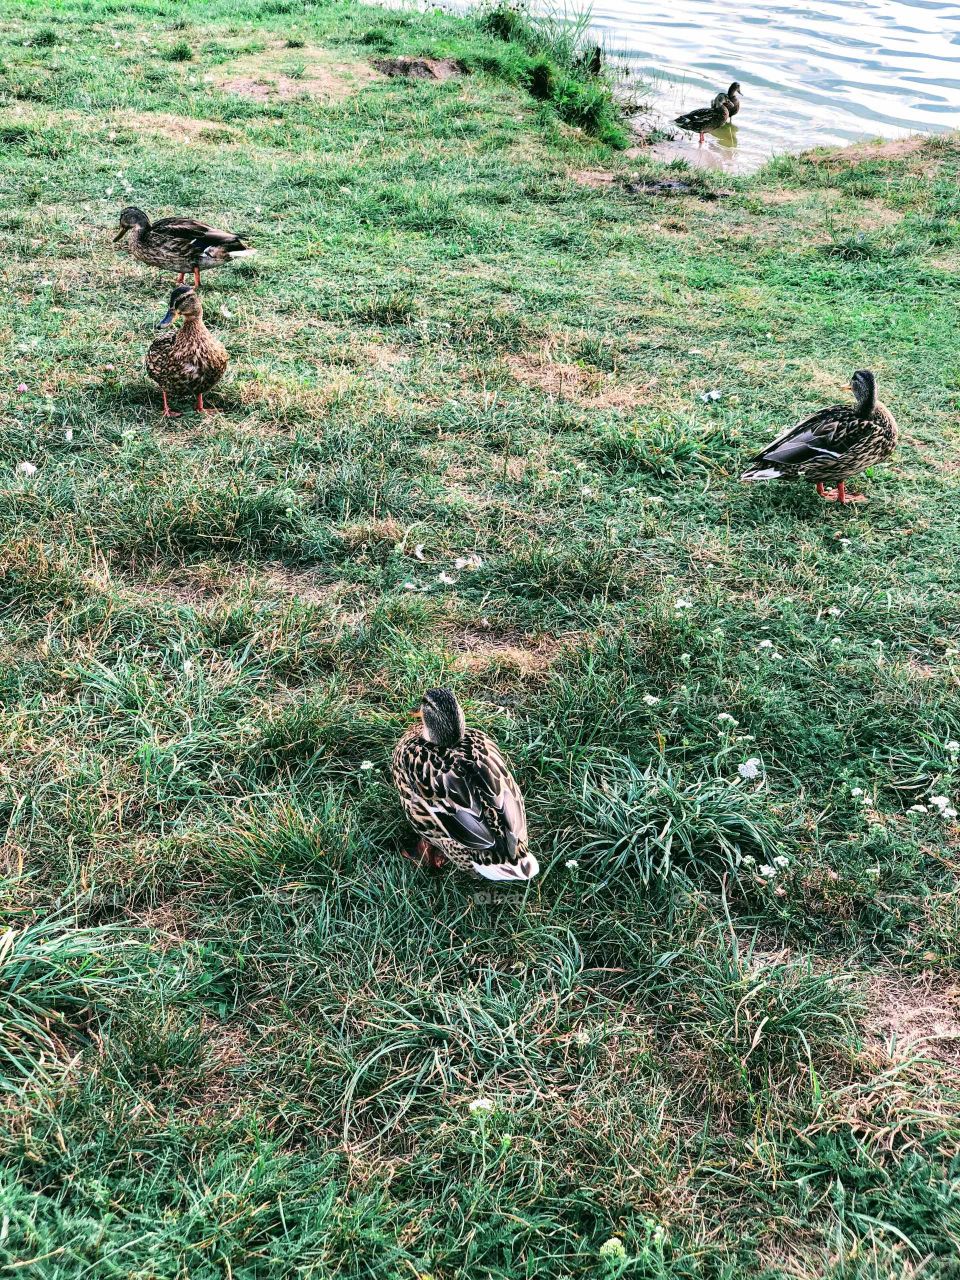 Walking ducks